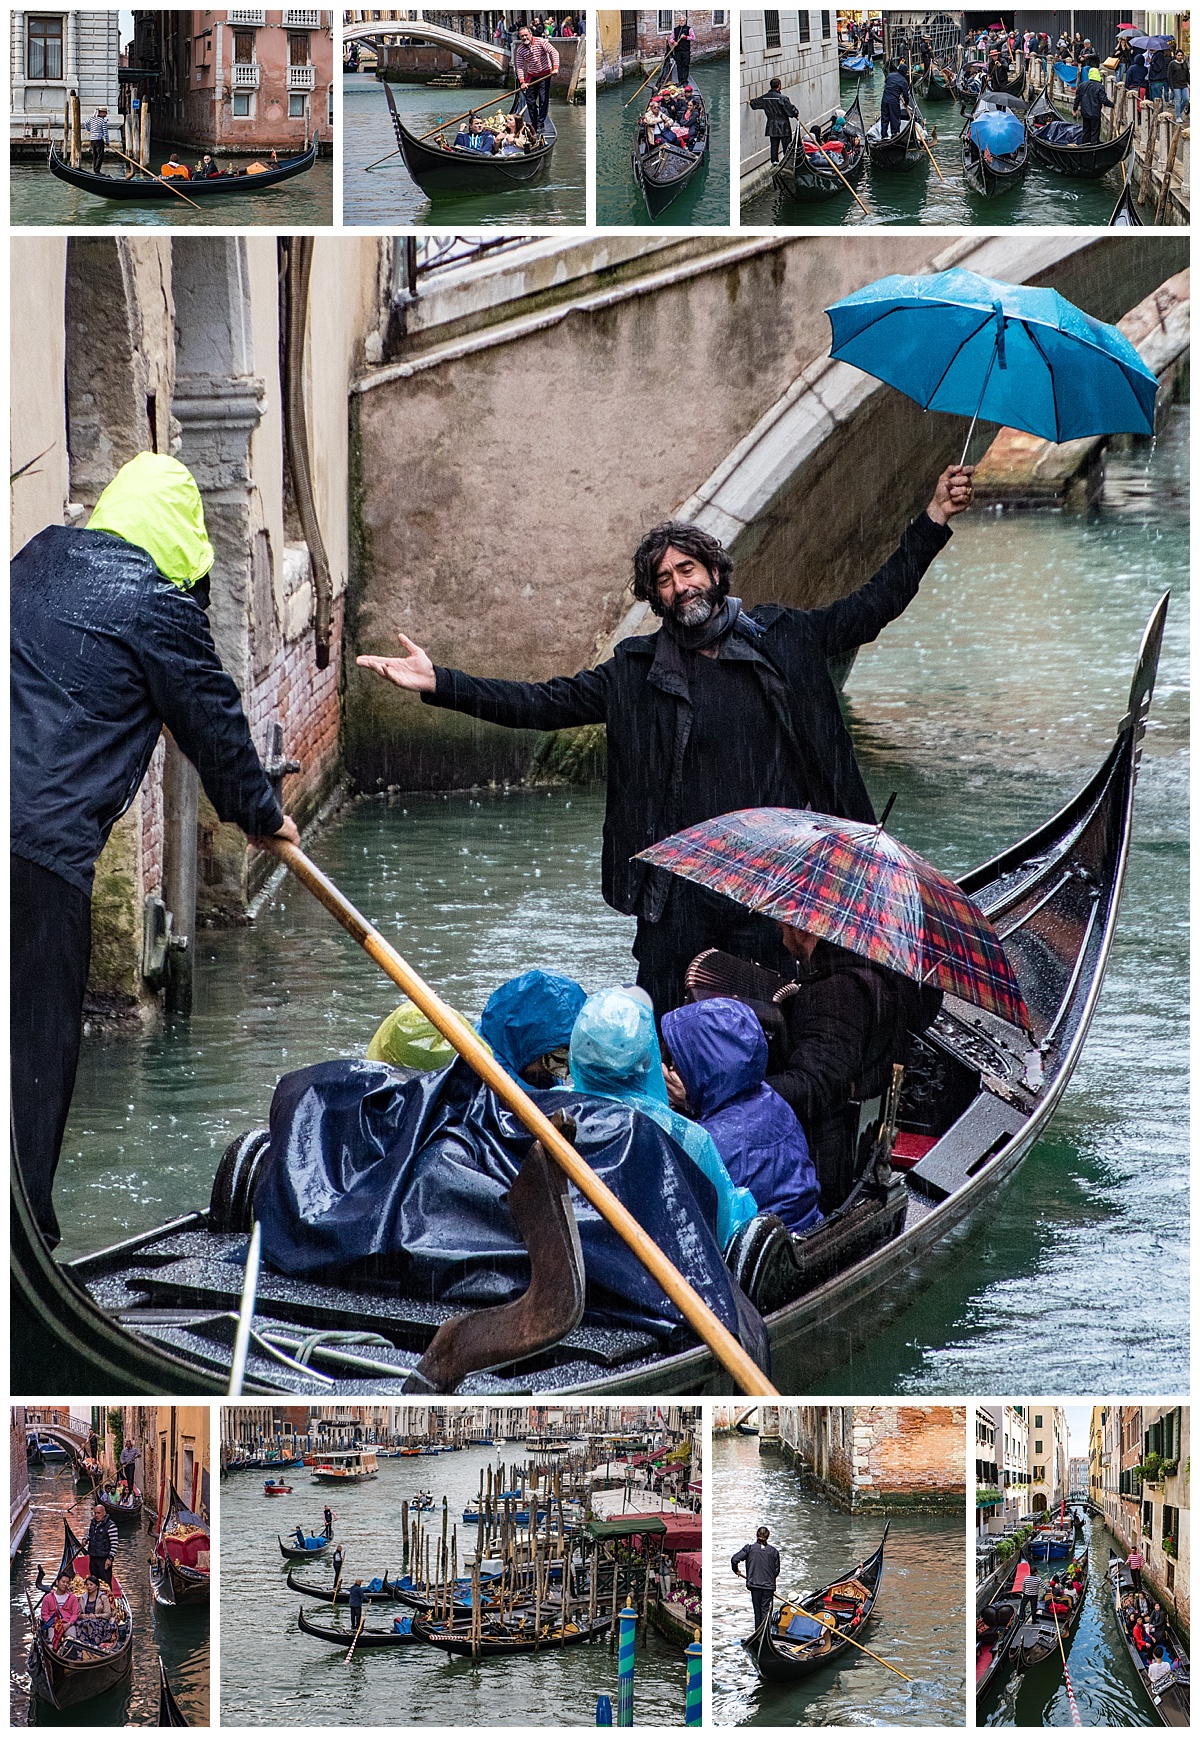 Venice, Italy - gondolas